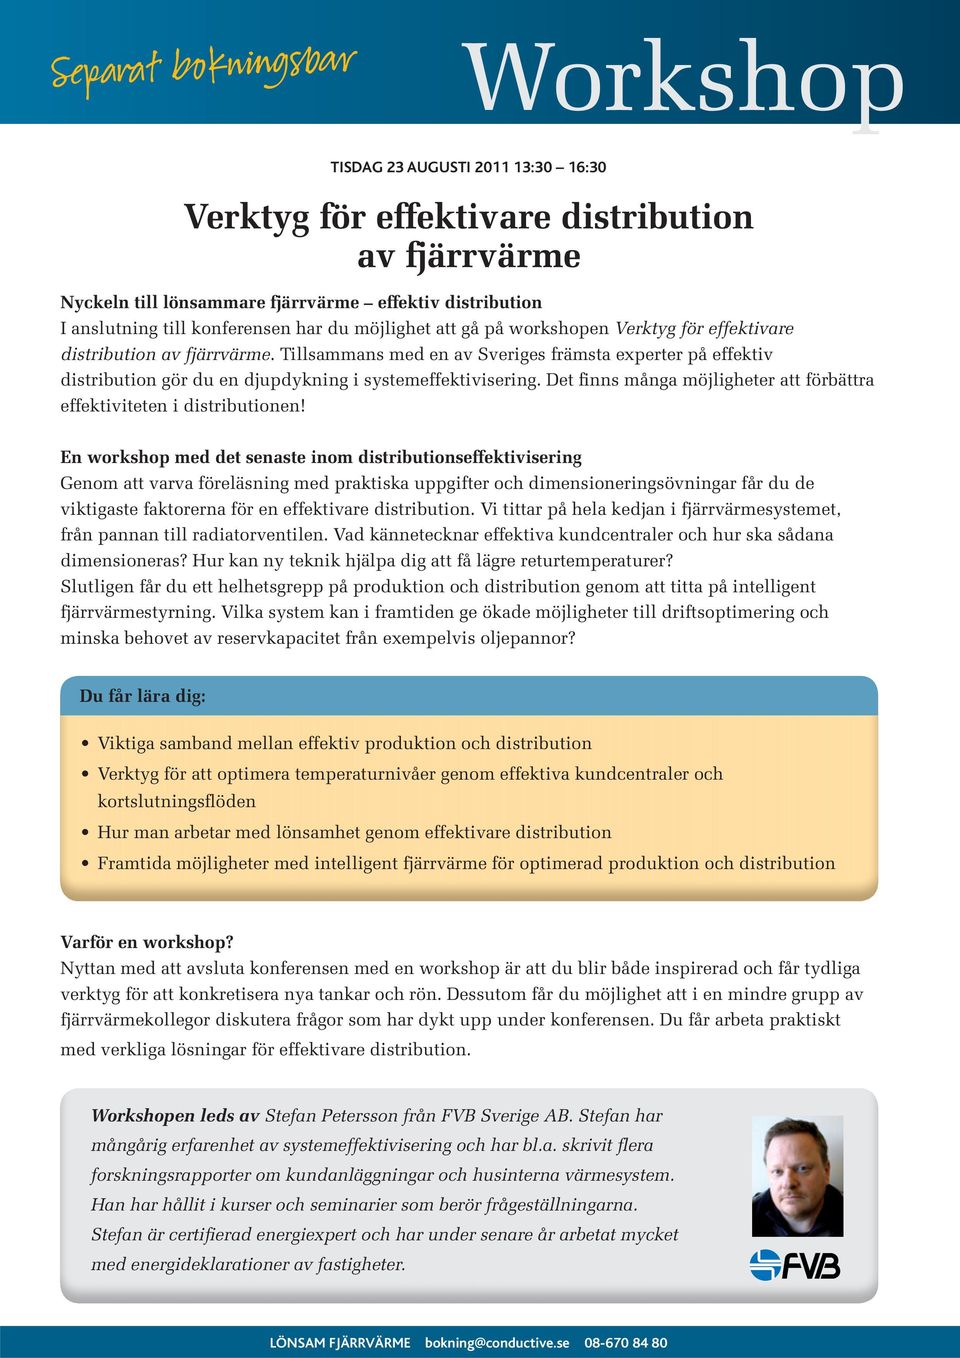 Tillsammans med en av Sveriges främsta experter på effektiv distribution gör du en djupdykning i systemeffektivisering. Det finns många möjligheter att förbättra effektiviteten i distributionen!